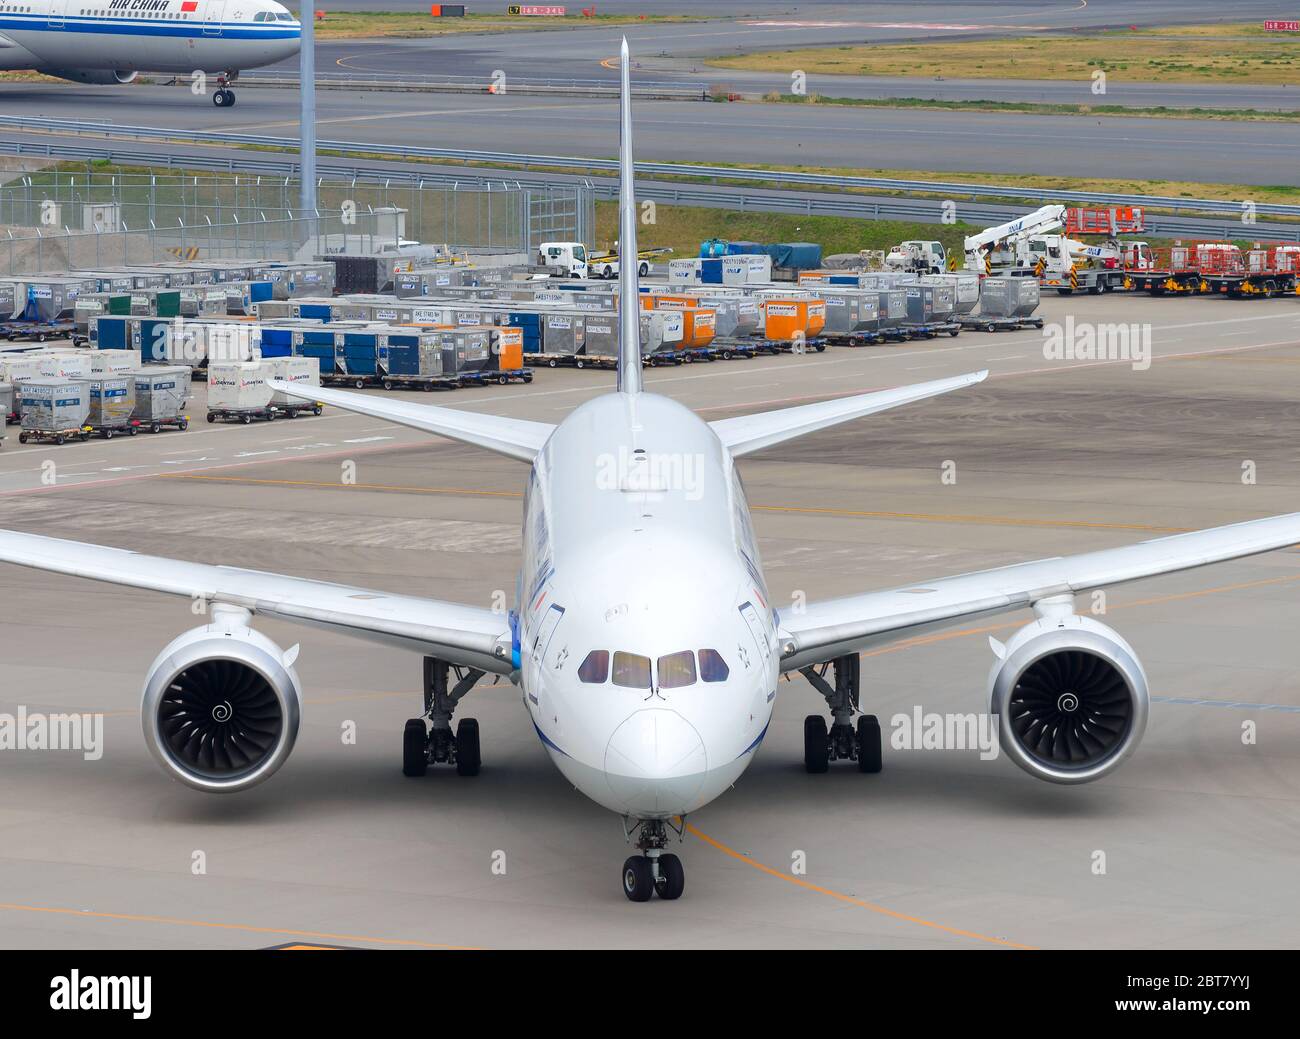 Vue frontale de tous les Boeing 787 Dreamliner de Nippon Airways ANA à l'aéroport international Tokyo Haneda (HND), Japon. Avion 787-8 comme JA801A. Banque D'Images